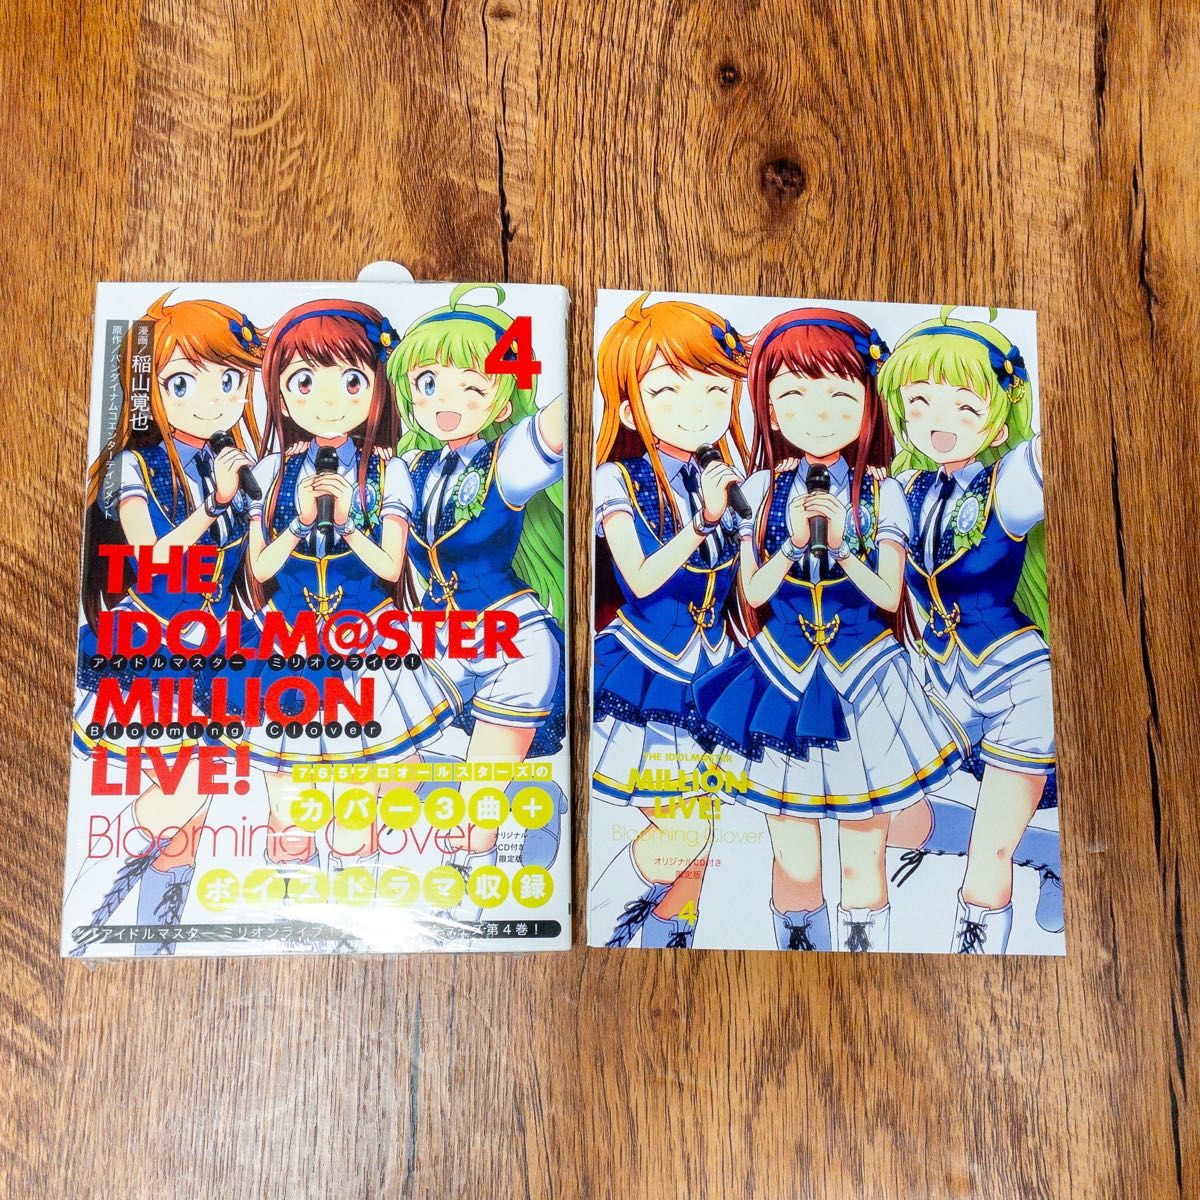 アイドルマスター ミリオンライブ! Blooming Clover 4 オリジナルCD付き限定版